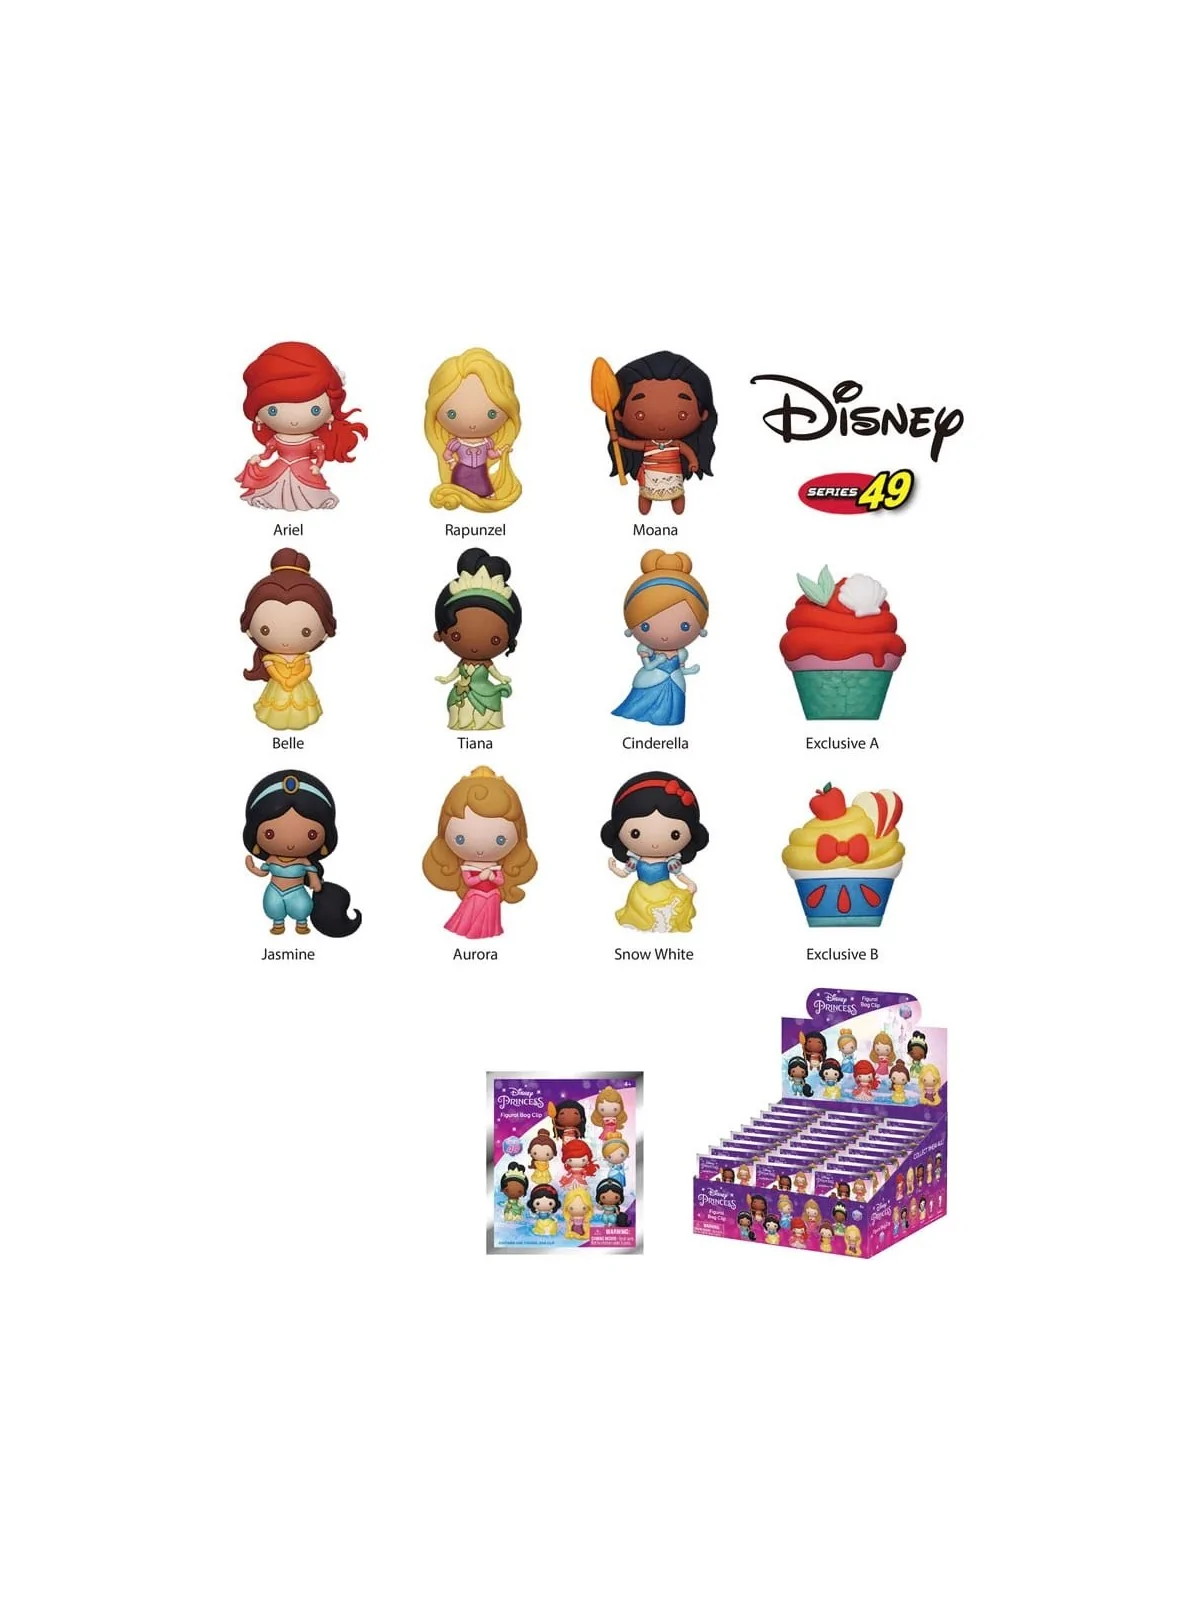 Comprar Llaveros Disney Princesas barato al mejor precio 7,99 € de Mon